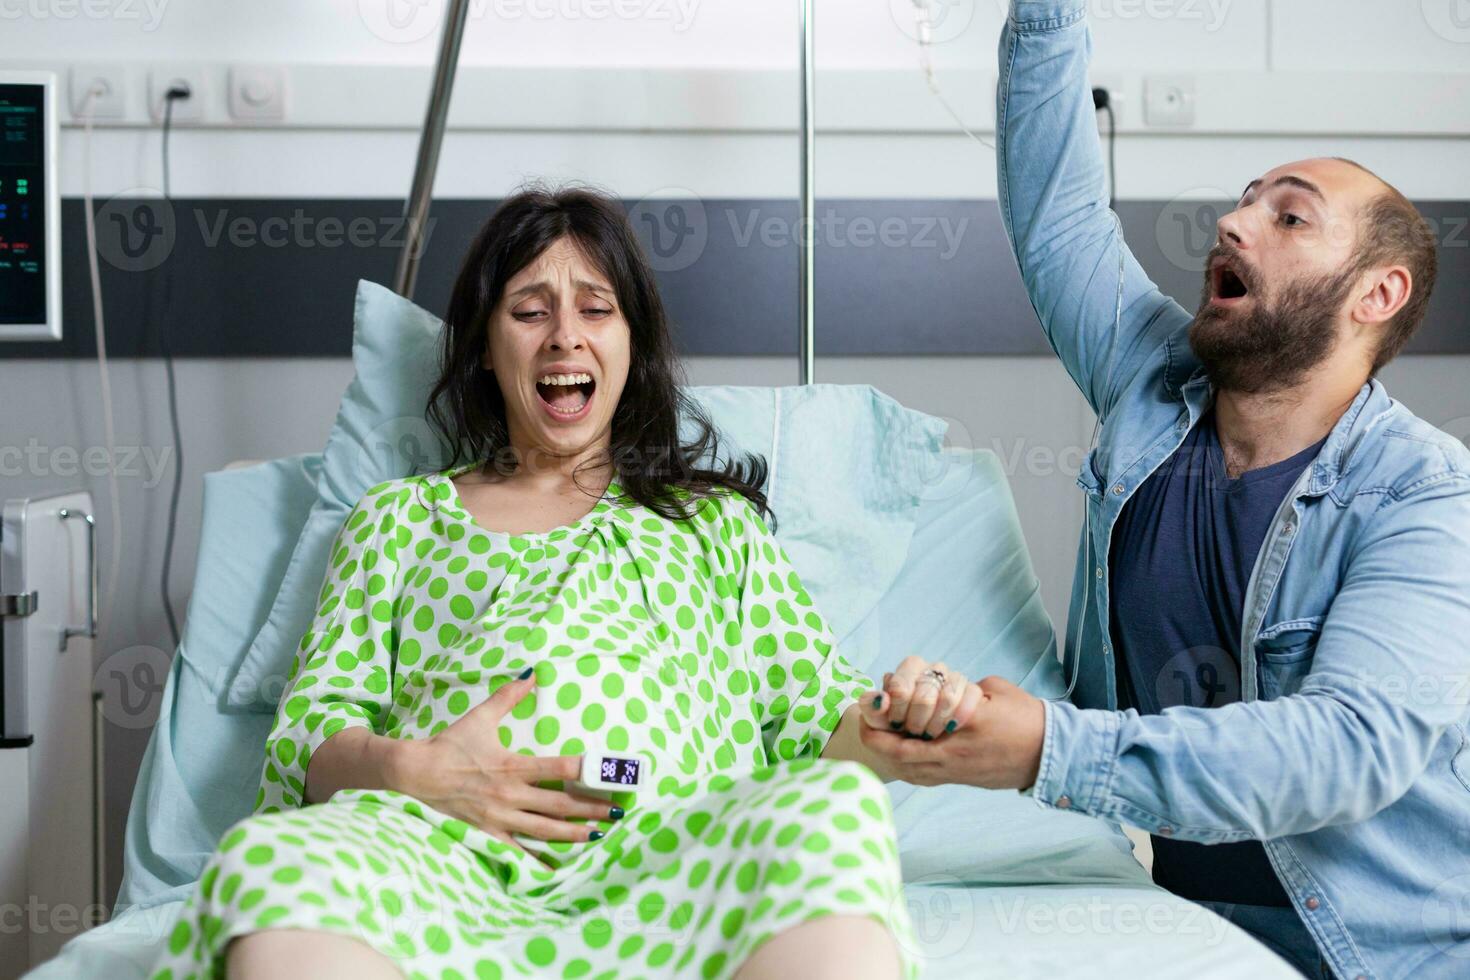 jong paar ervan uitgaand baby in ziekenhuis afdeling bed Bij gezondheidszorg faciliteit. vrouw met zwangerschap hebben pijnlijk weeën krijgen in arbeid terwijl man in paniek raken over bevalling. foto